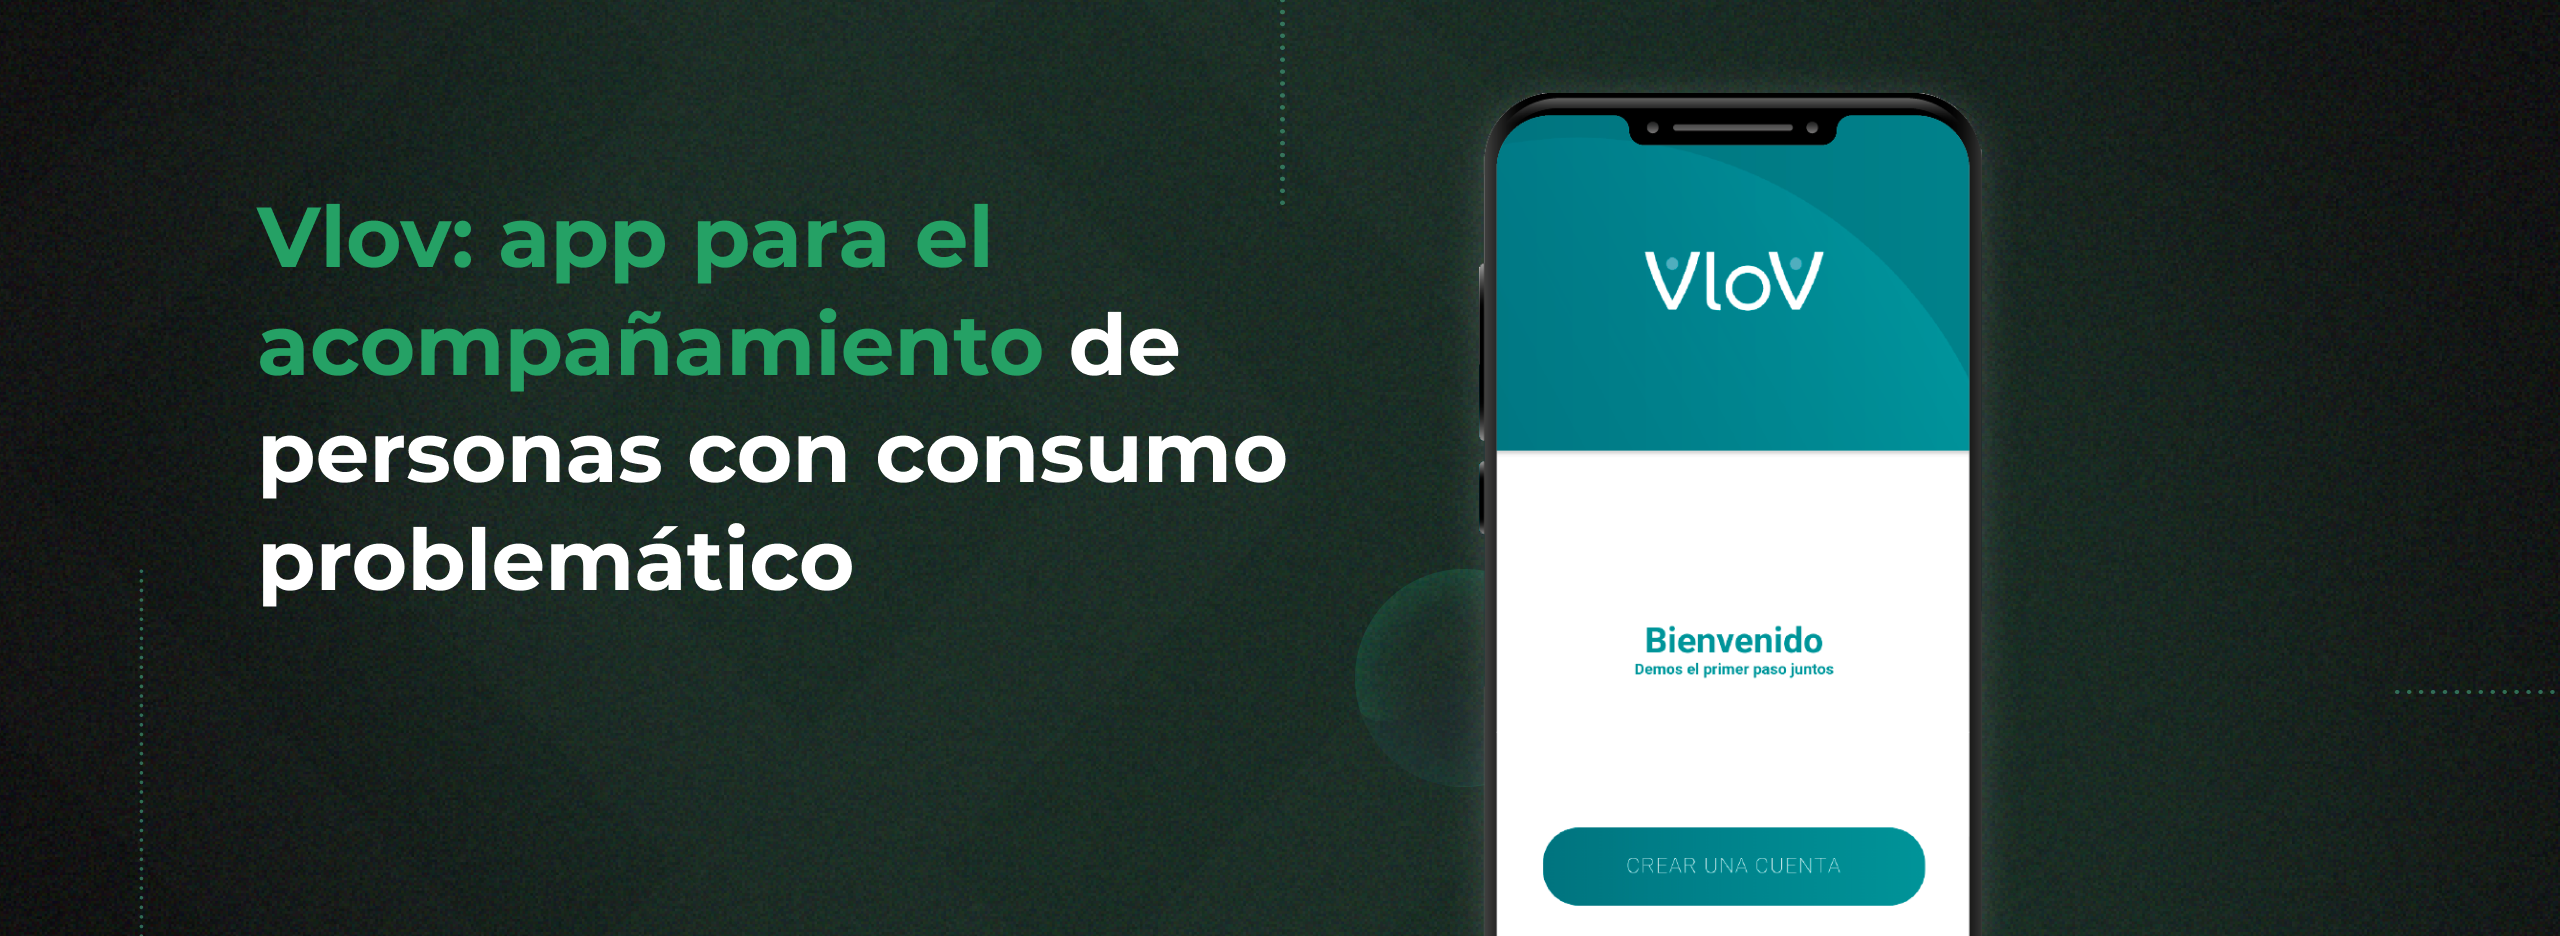 Vlov: app de apoyo para personas con consumos problemáticos